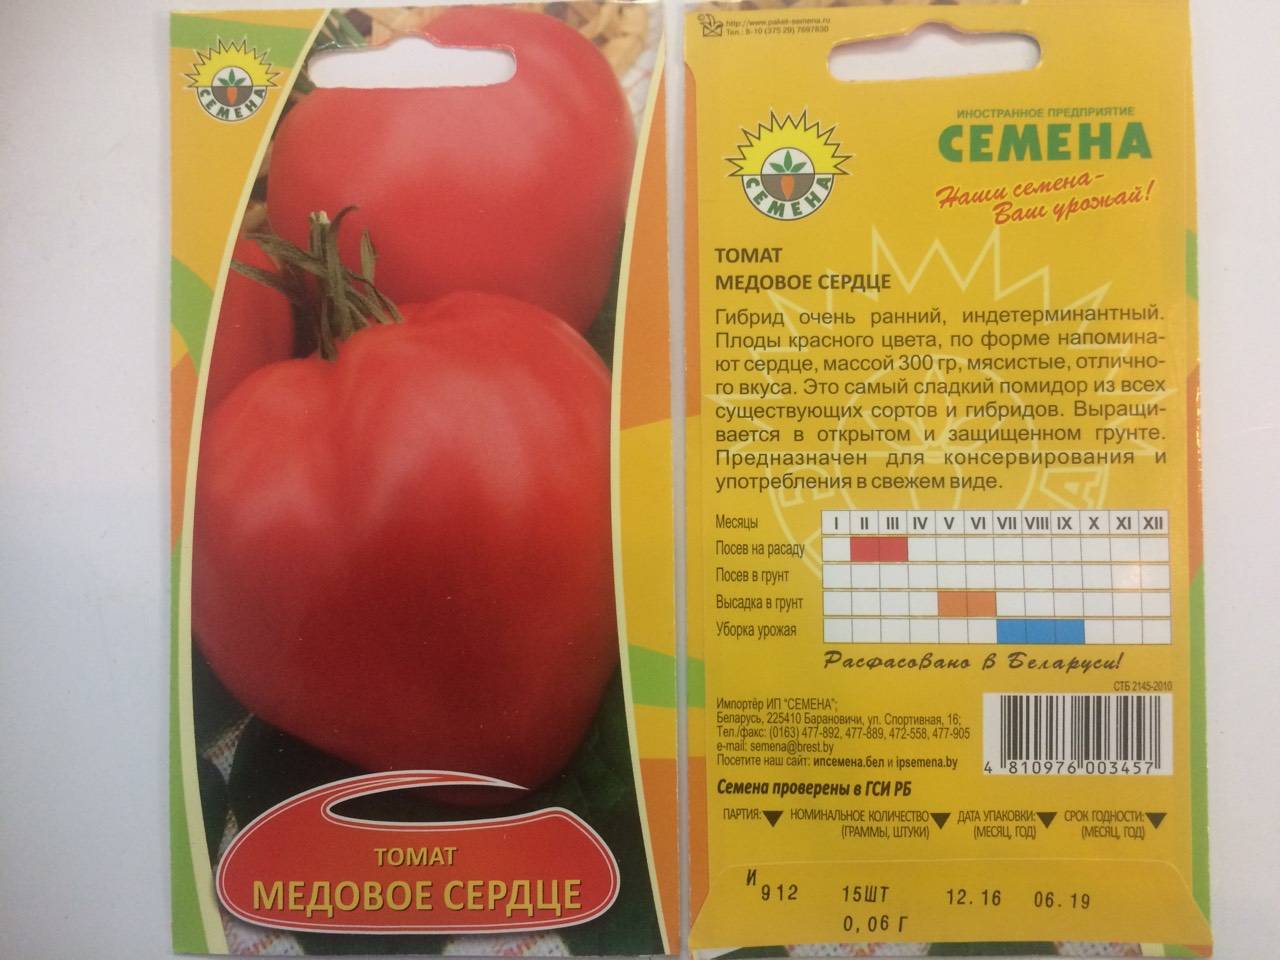 Фото, отзывы, описание, характеристика, урожайность сорта помидора «марисса».